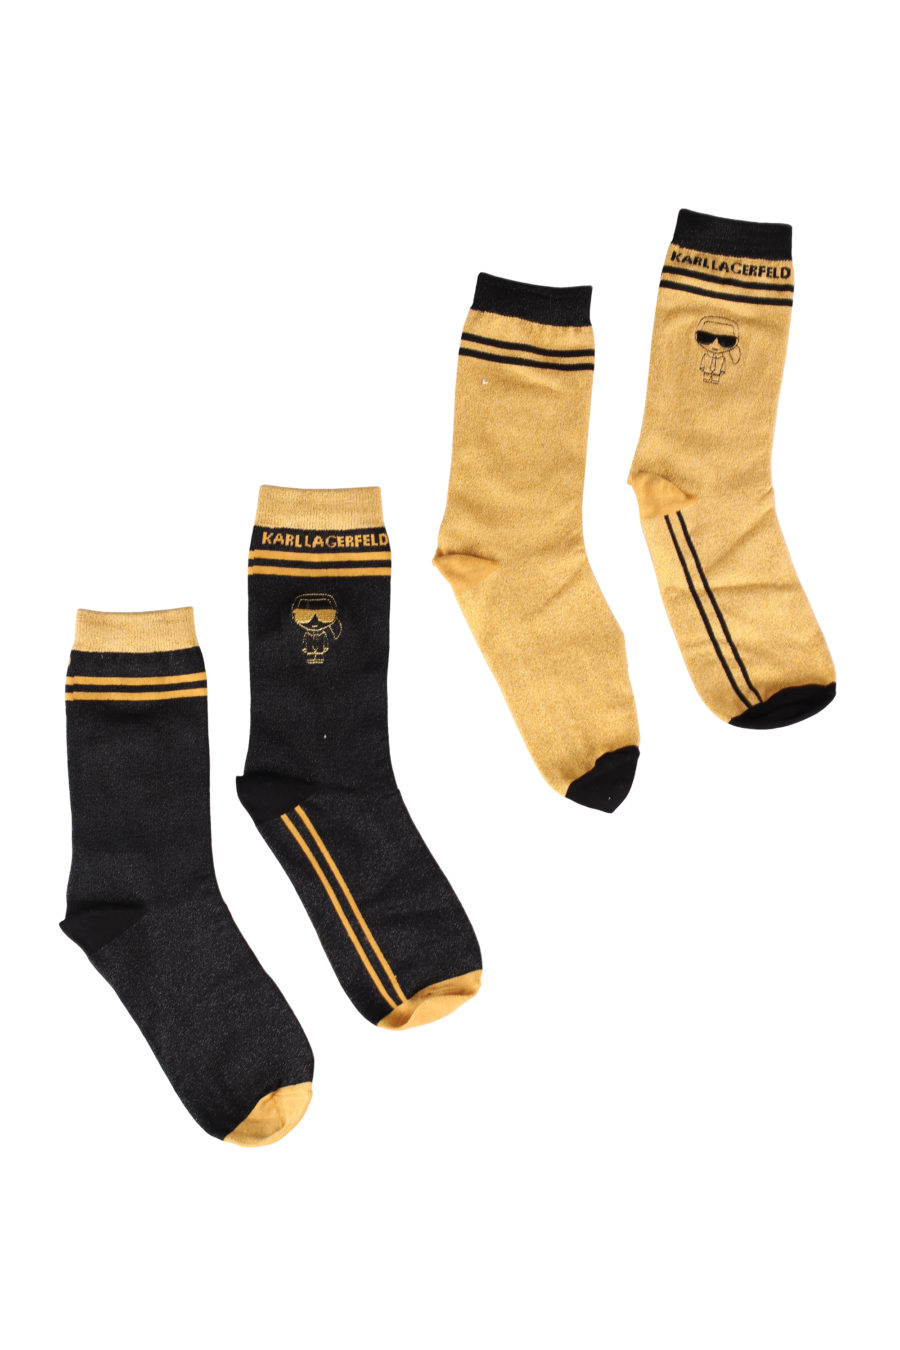 Pack de dos calcetines negros y dorados con "Karl" - IMG 9657